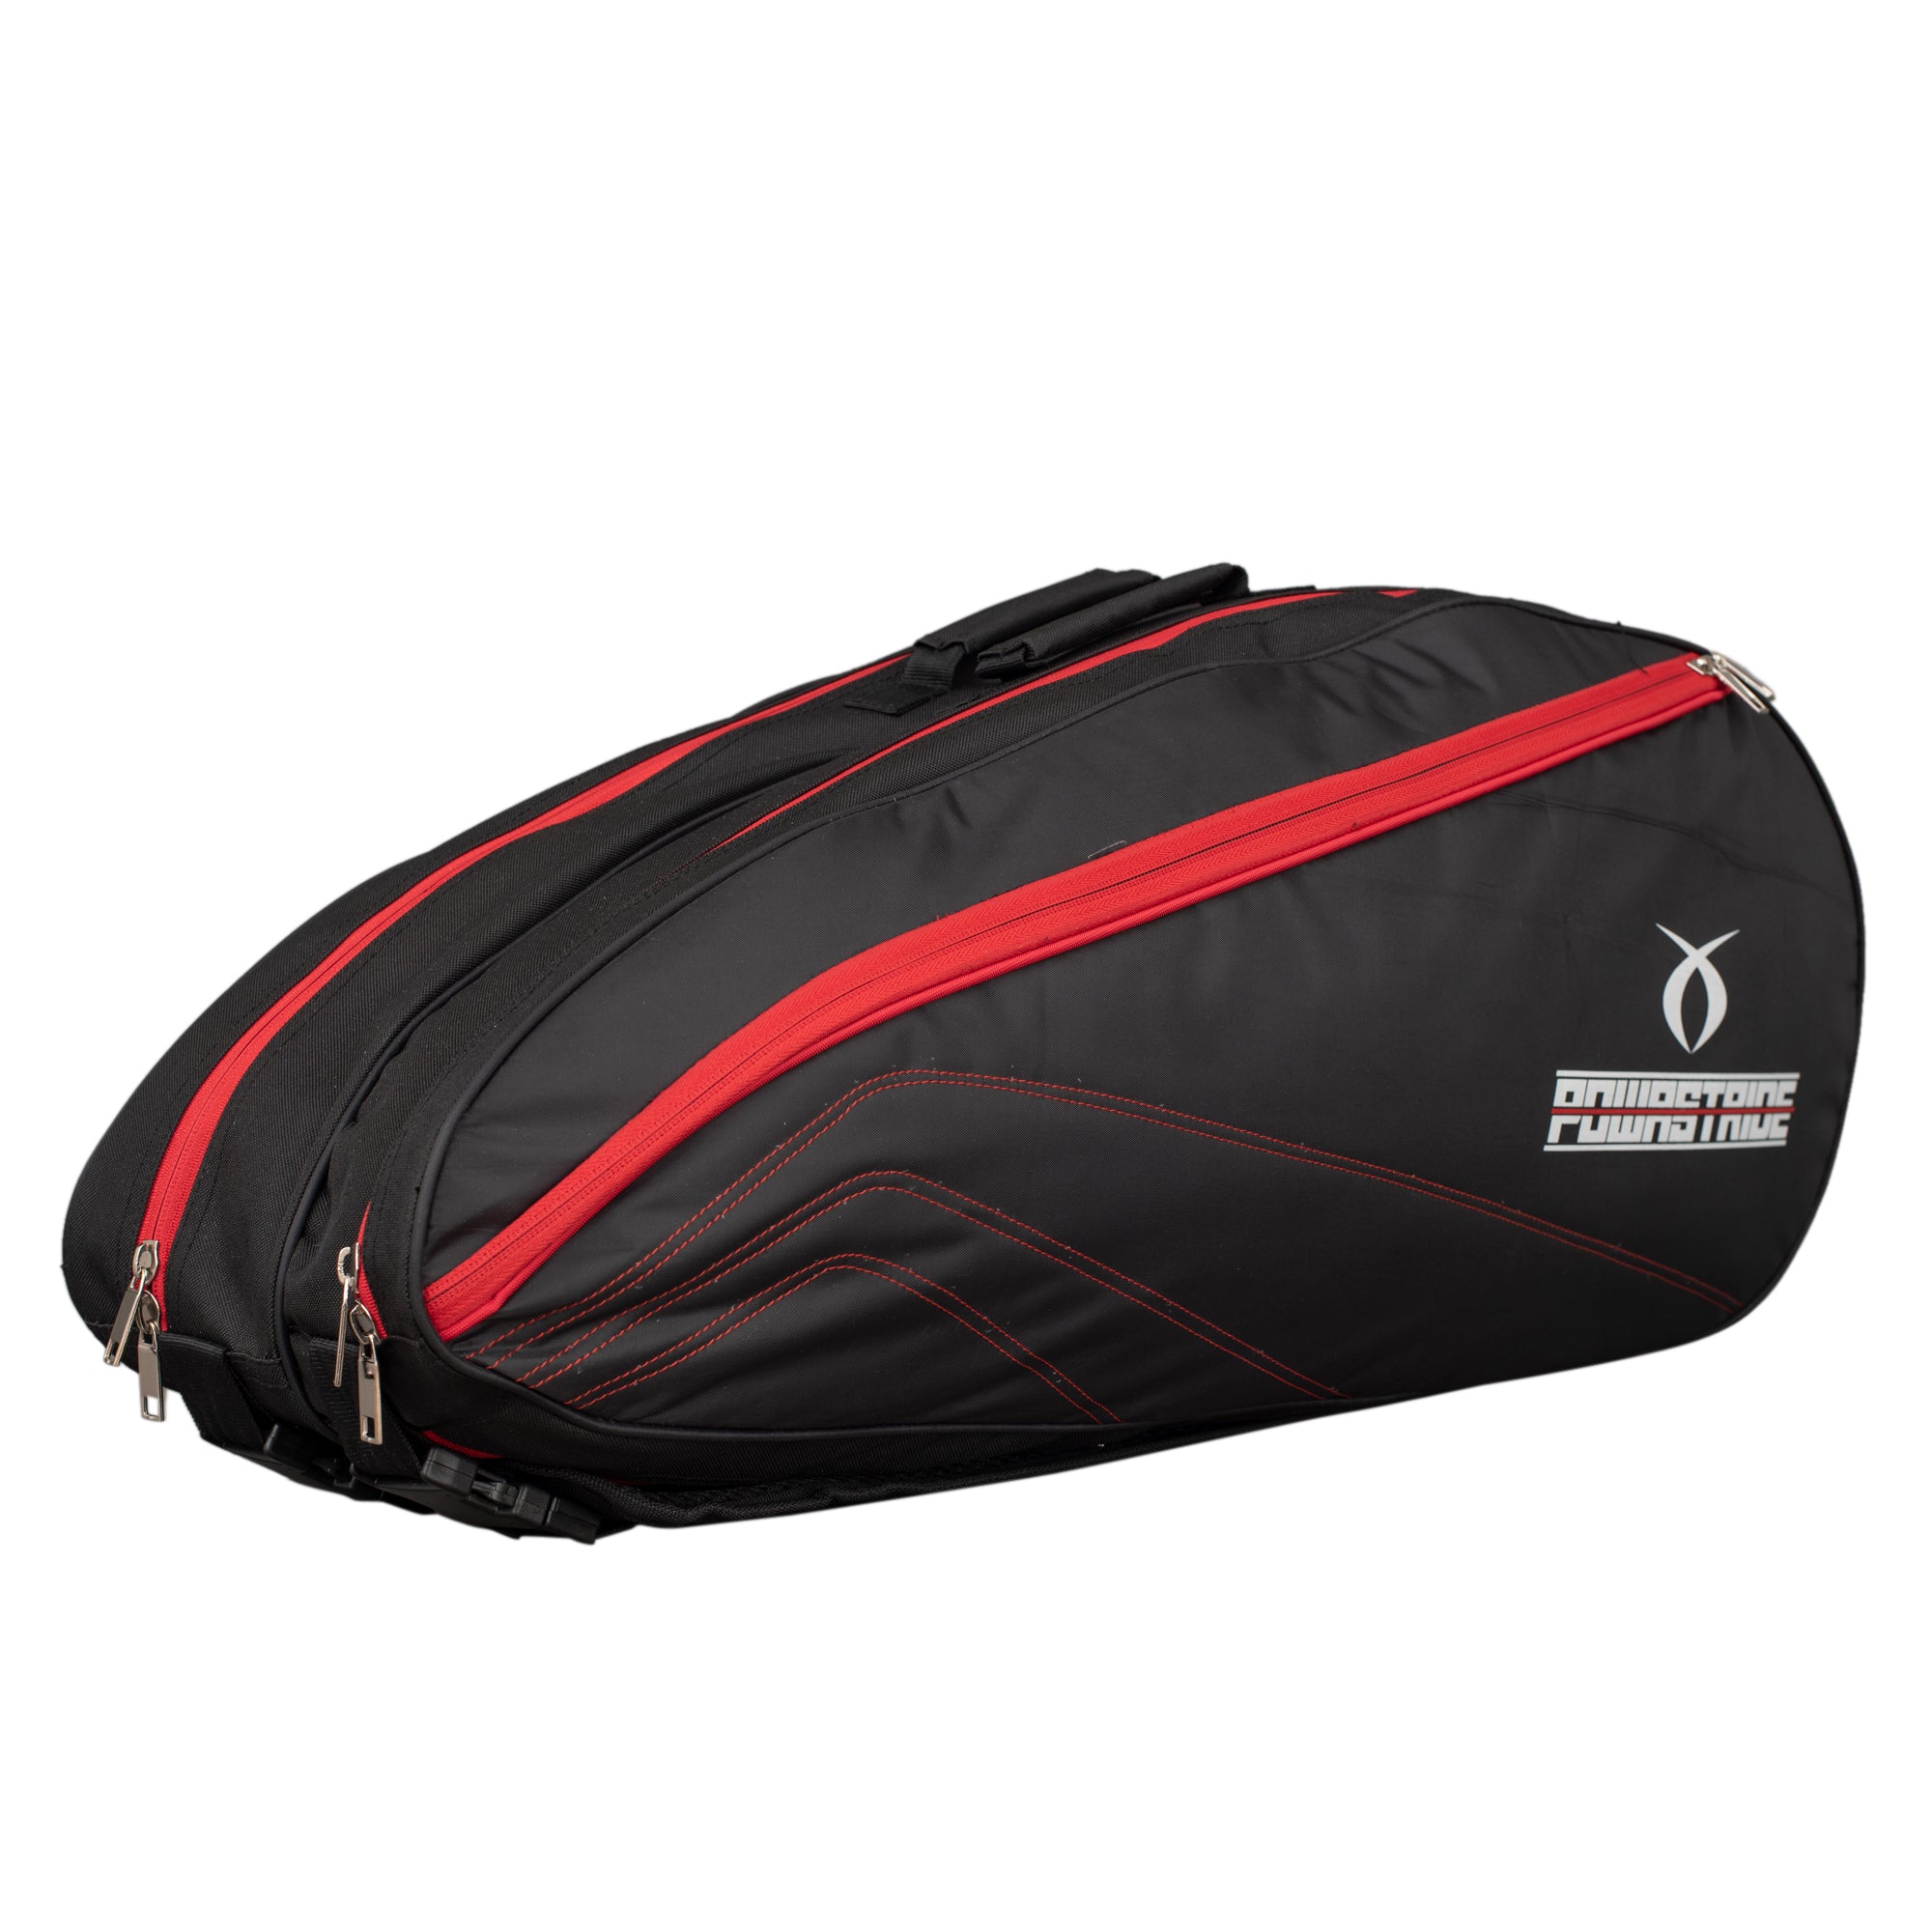 Powastride Double Compartment Badminton Kit Bag